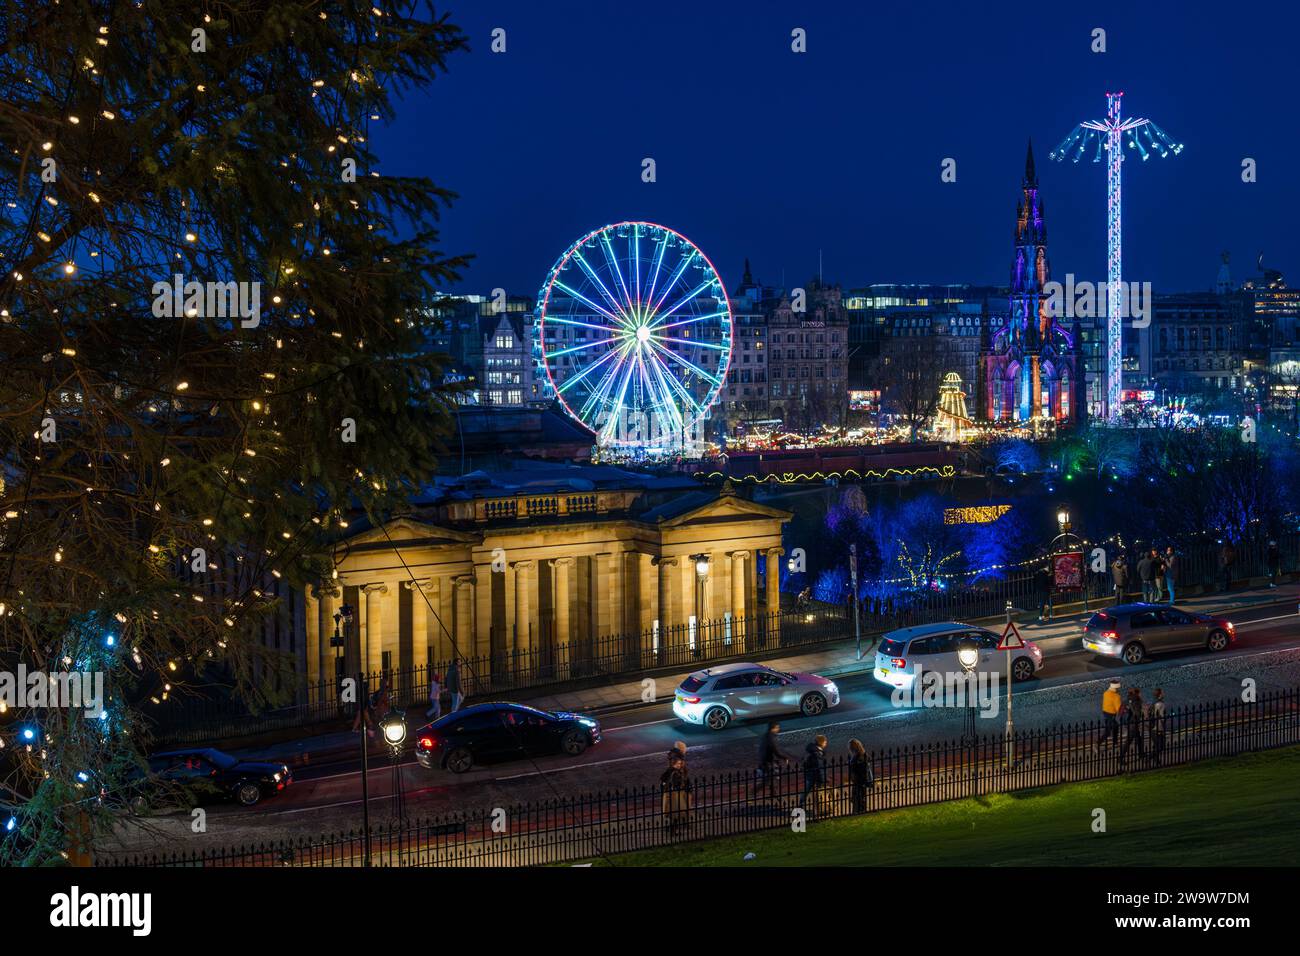 Giostre sulla grande ruota panoramica e sulla fiera Star Flyer illuminate di notte al Christmas Market di Edimburgo, Scozia, Regno Unito Foto Stock